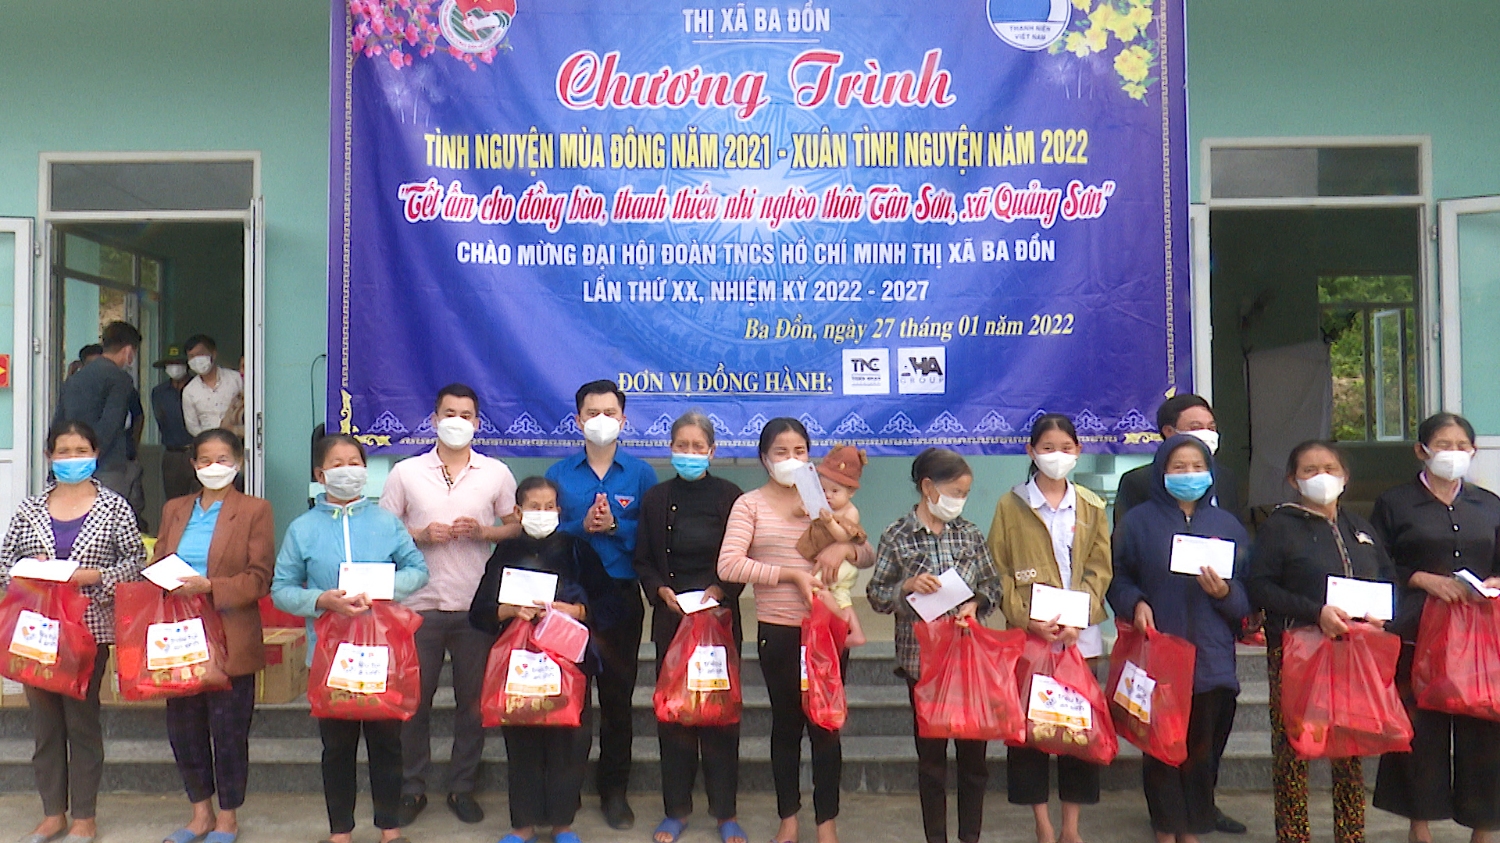 Thị đoàn Ba Đồn và các nhà tài trợ trao tặng 43 suất quà cho các hộ nghèo, hộ cận nghèo, hộ già cả, đau ốm tại thôn Tân Sơn, xã Quảng Sơn.